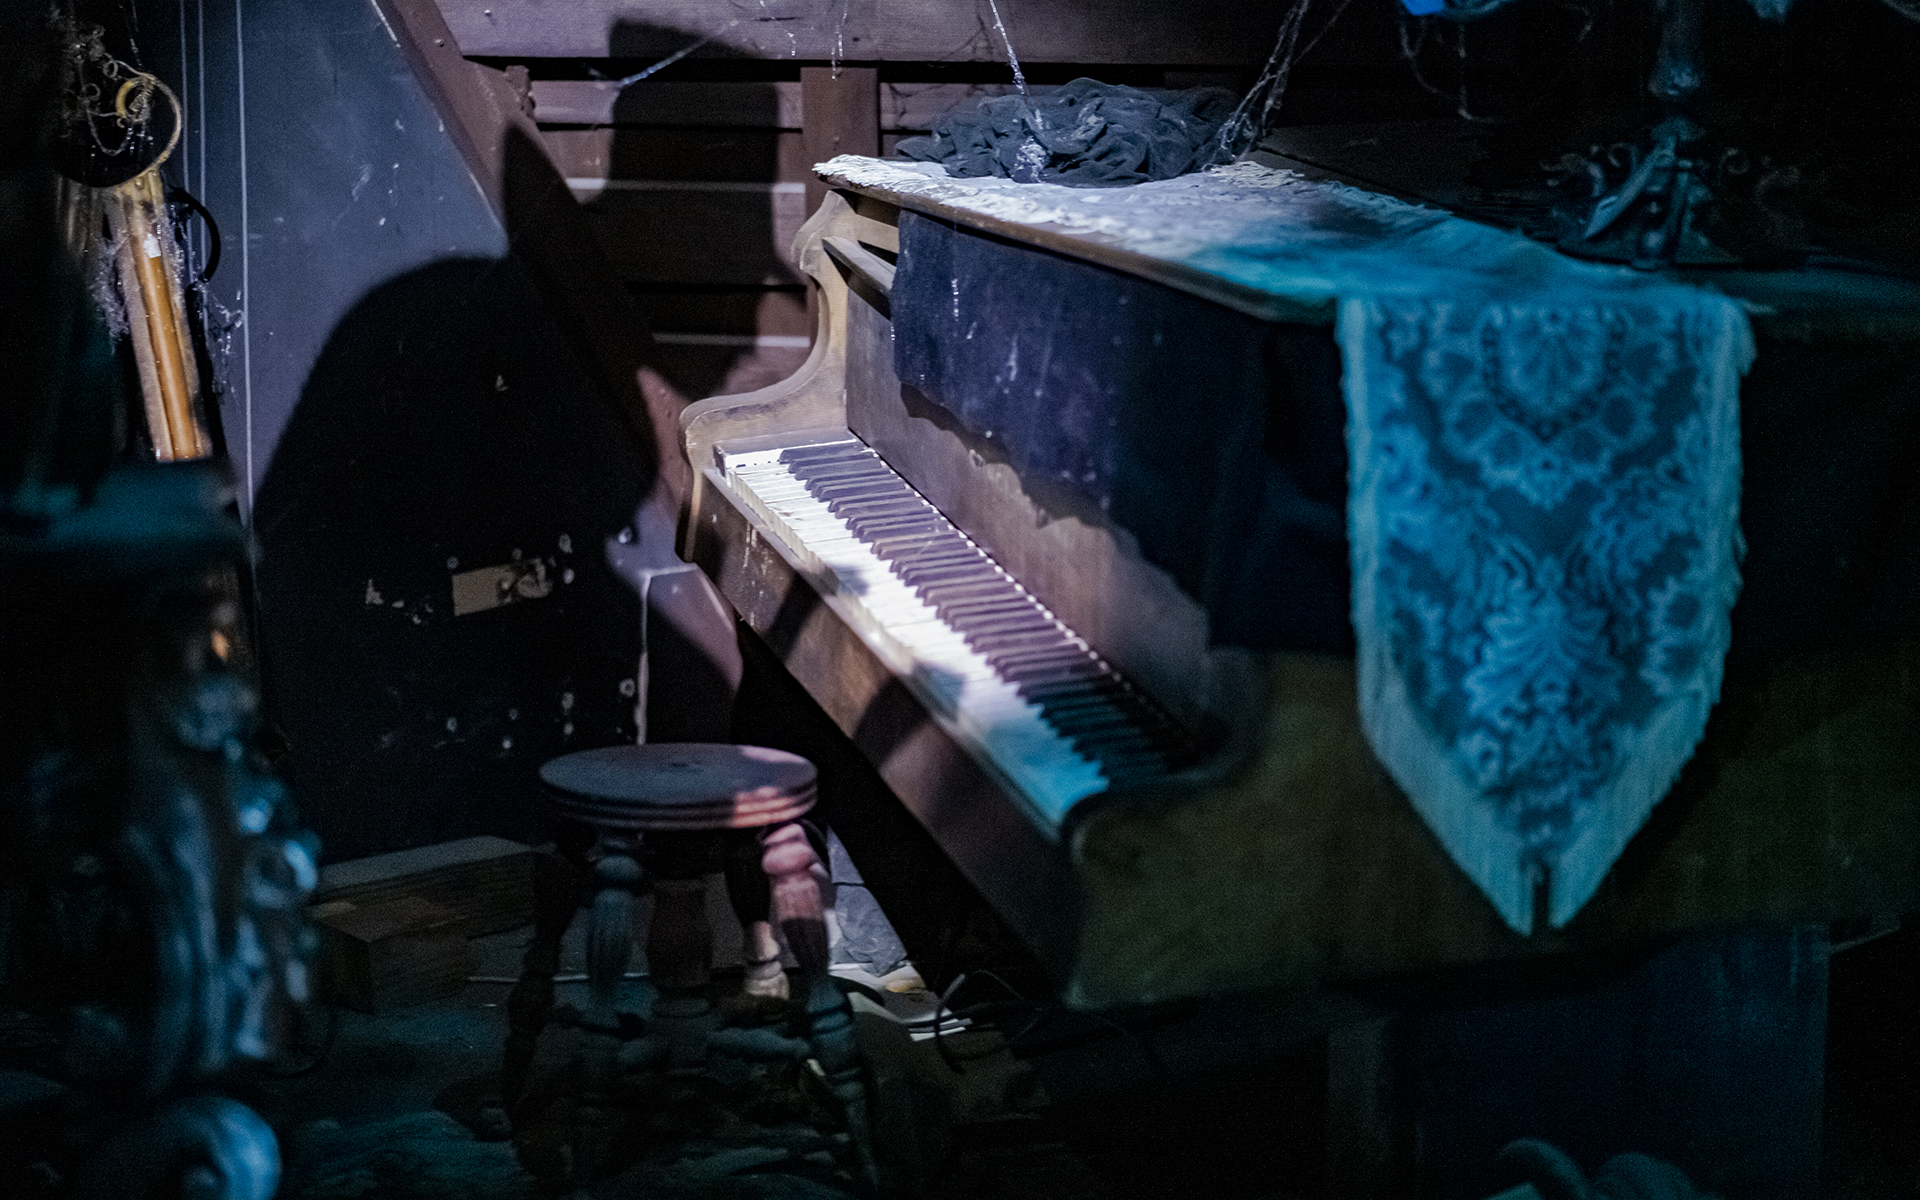 Tapis Piano Musical – Pleasure 4 Home